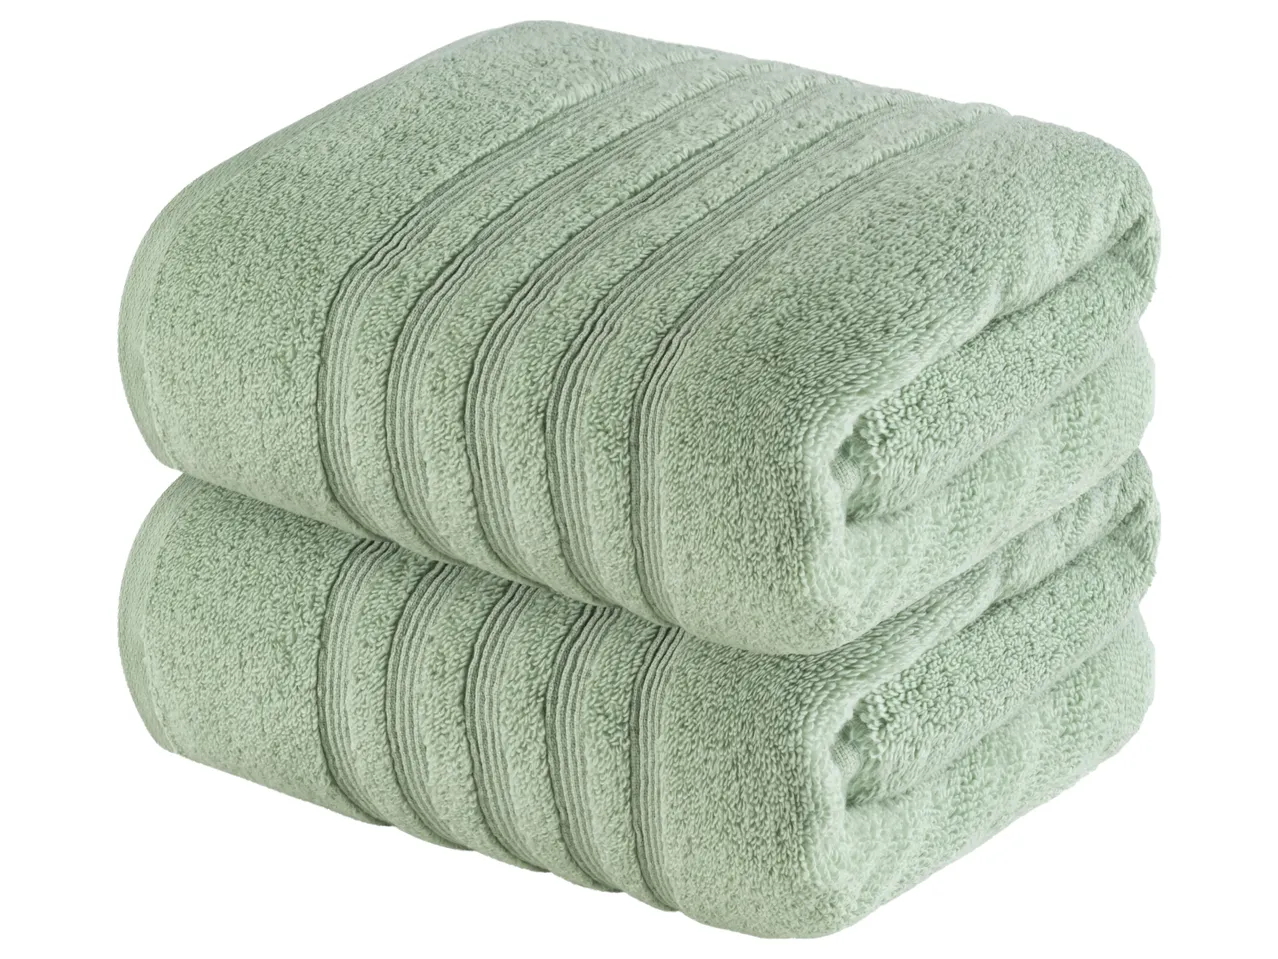 Asciugamano , prezzo 6,99 EUR 
Asciugamano 50x100 cm, 2 pezzi 
- Puro cotone
- 500 ...